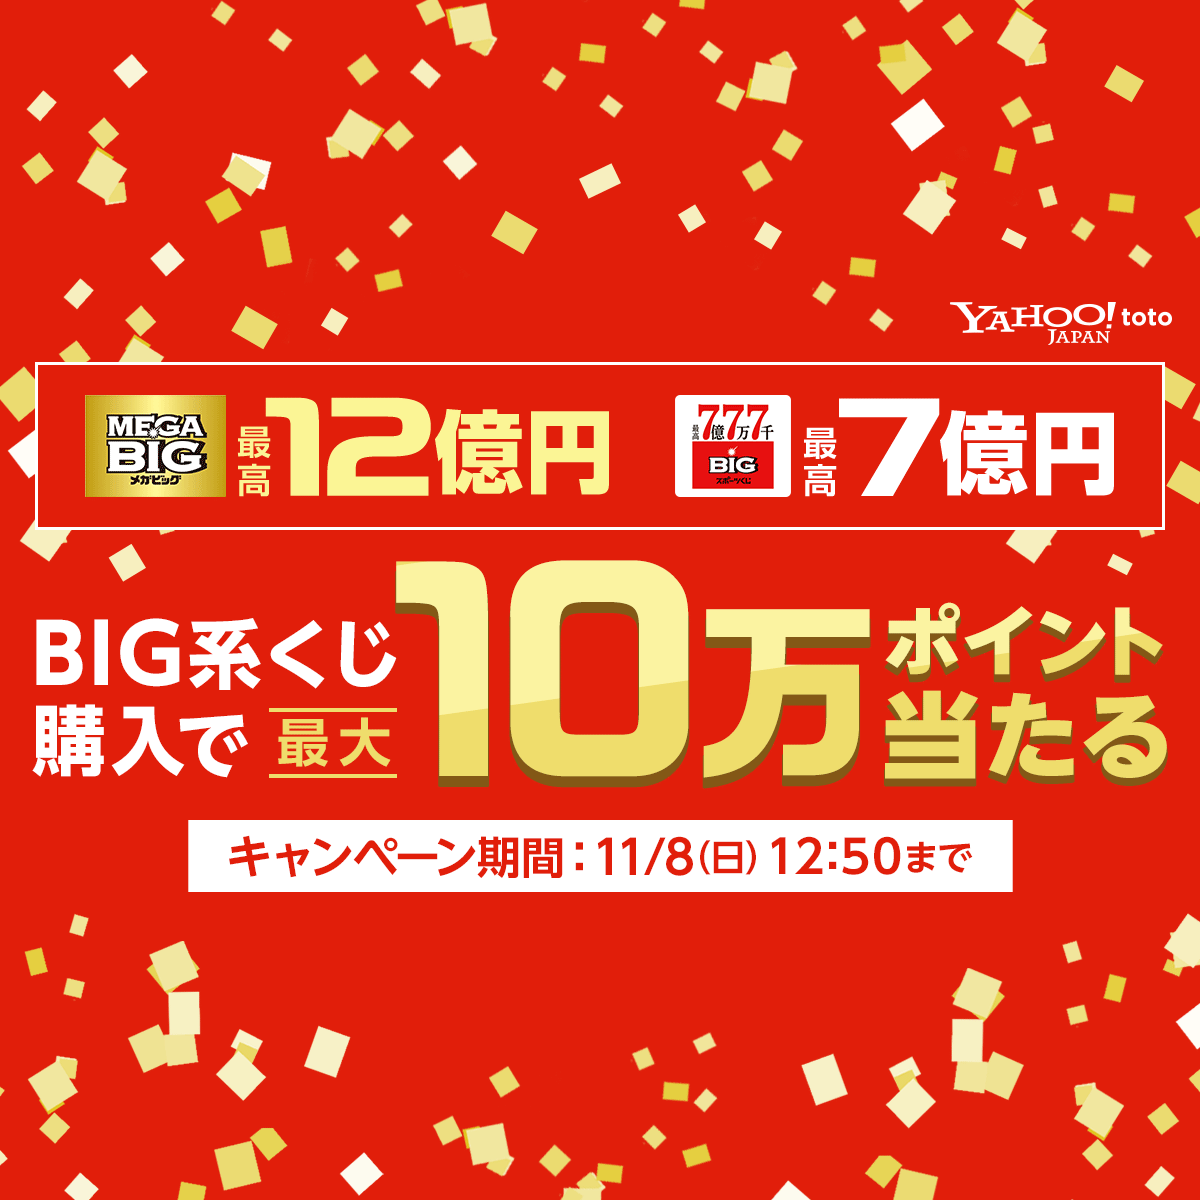 Mega Big1等最高12億円 最大10万ポイント当たるキャンペーン Yahoo Toto